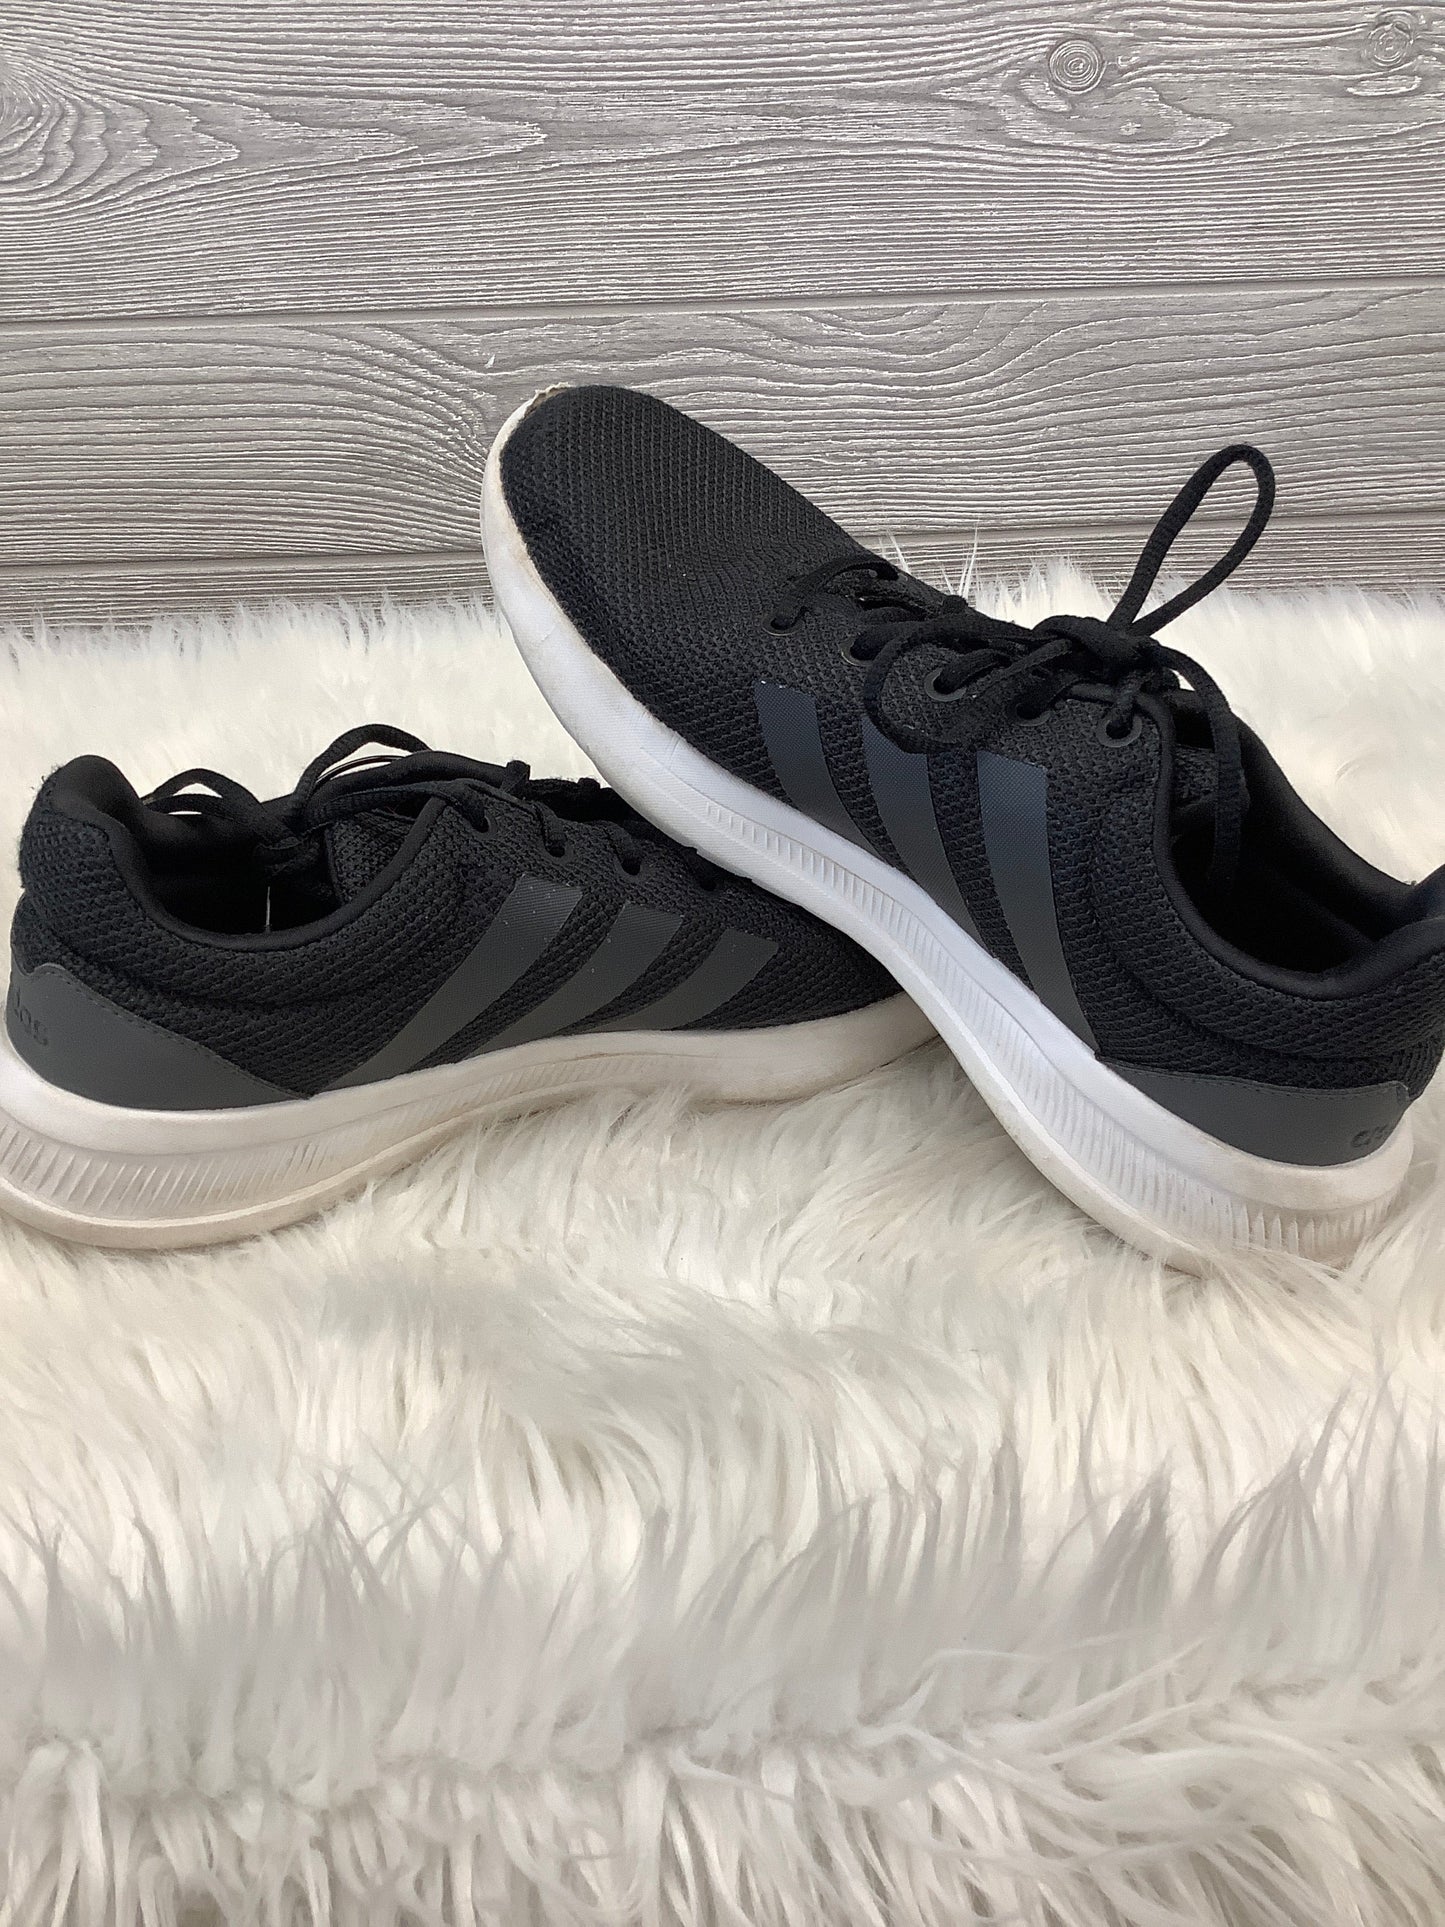 Black Shoes Athletic Adidas, Size 8